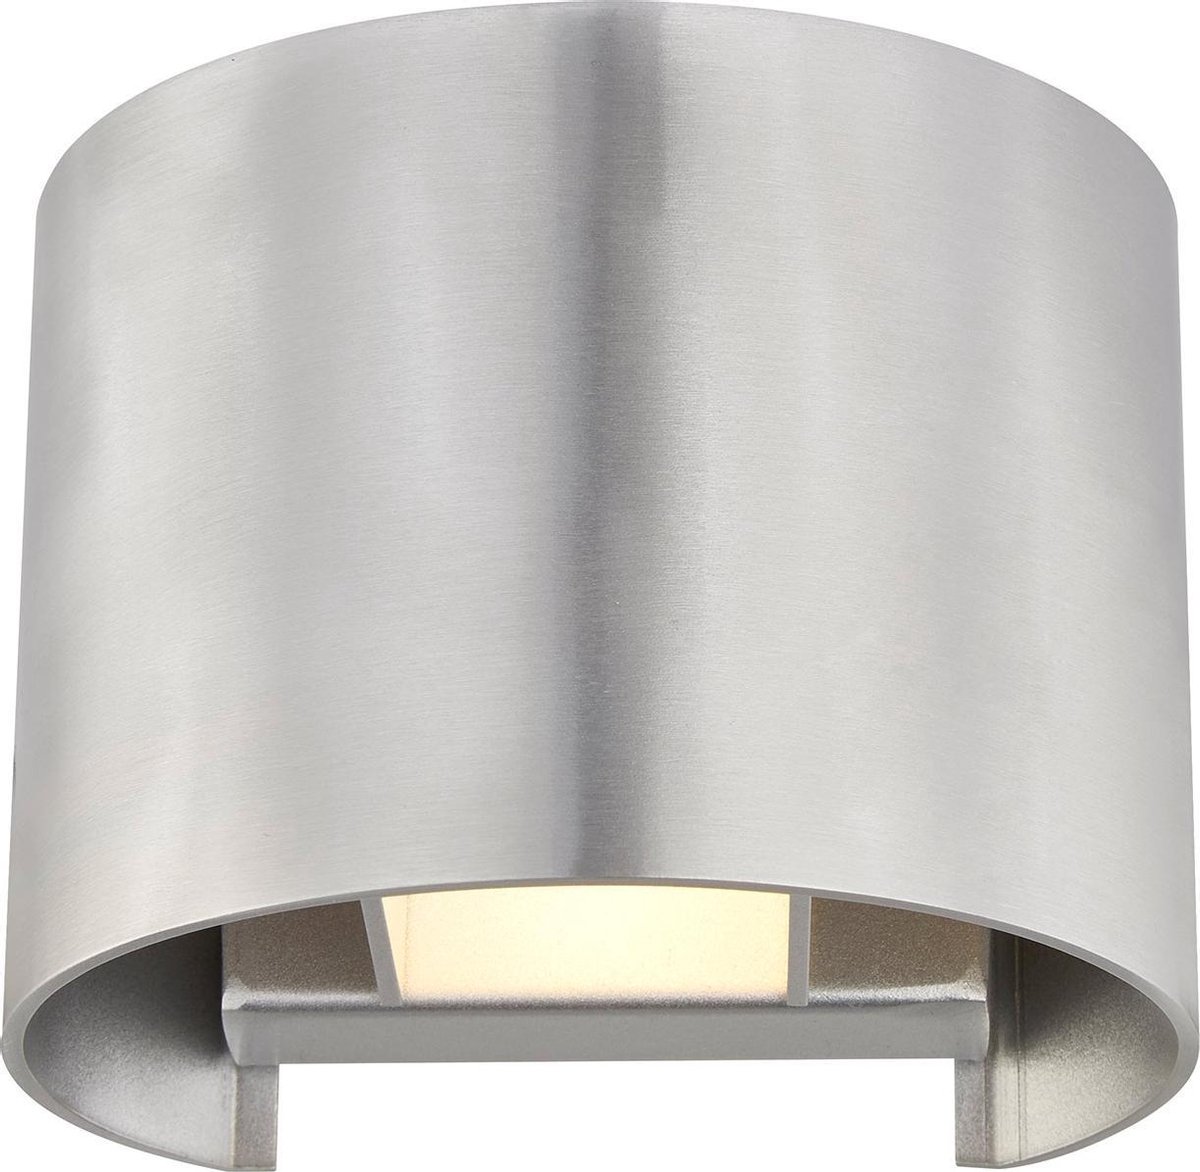 Arcchio - wandlamp - 1licht - aluminium, metaal - H: 9.7 cm - G9 - alu